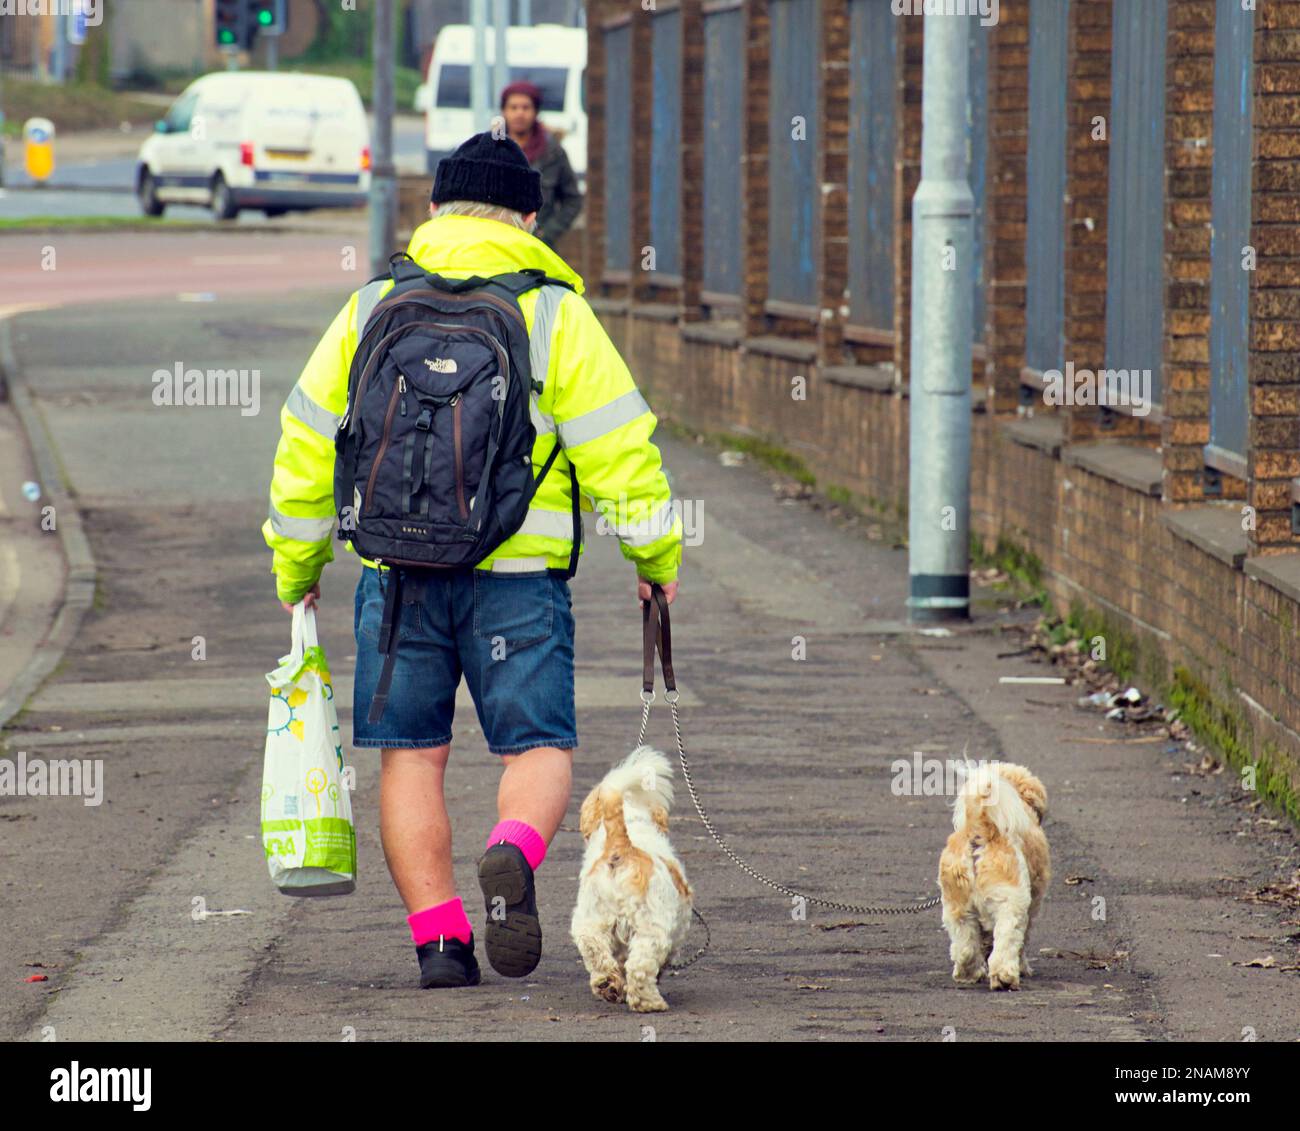 Mann in Shorts mit Einkaufstasche, der zwei kleine Hunde am Bürgersteig führt Stockfoto